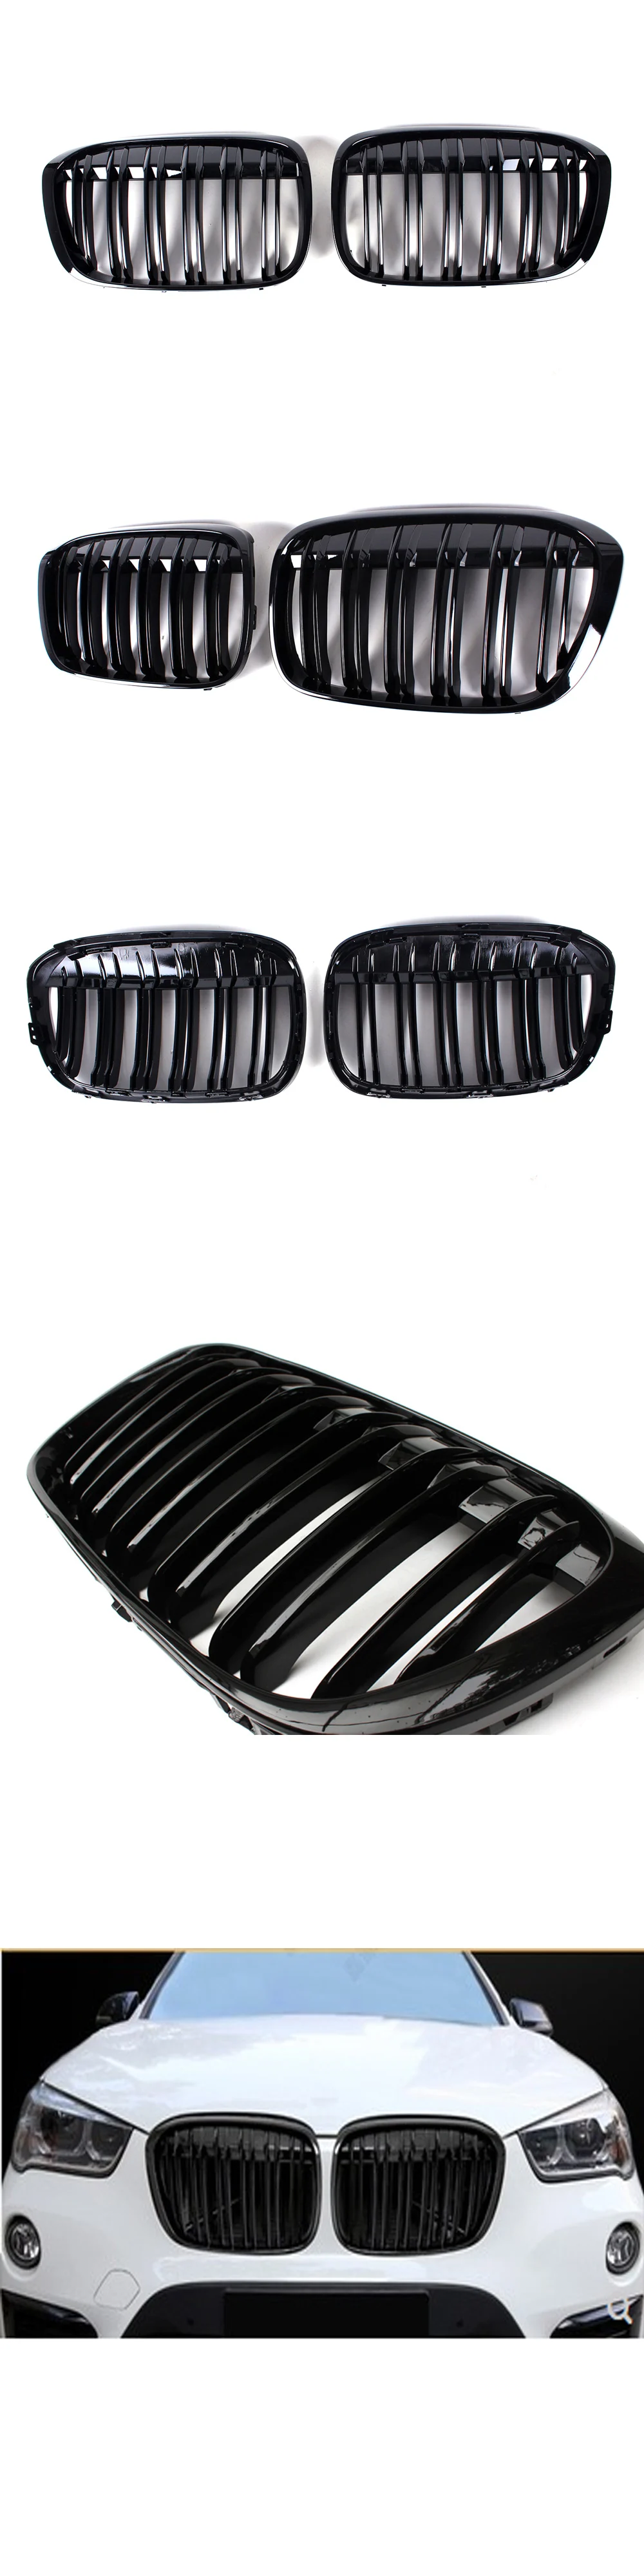 ABS двойная линия передняя решетка радиатора для BMW X1 серии F48-в почек решетки бампер глянцевый черный